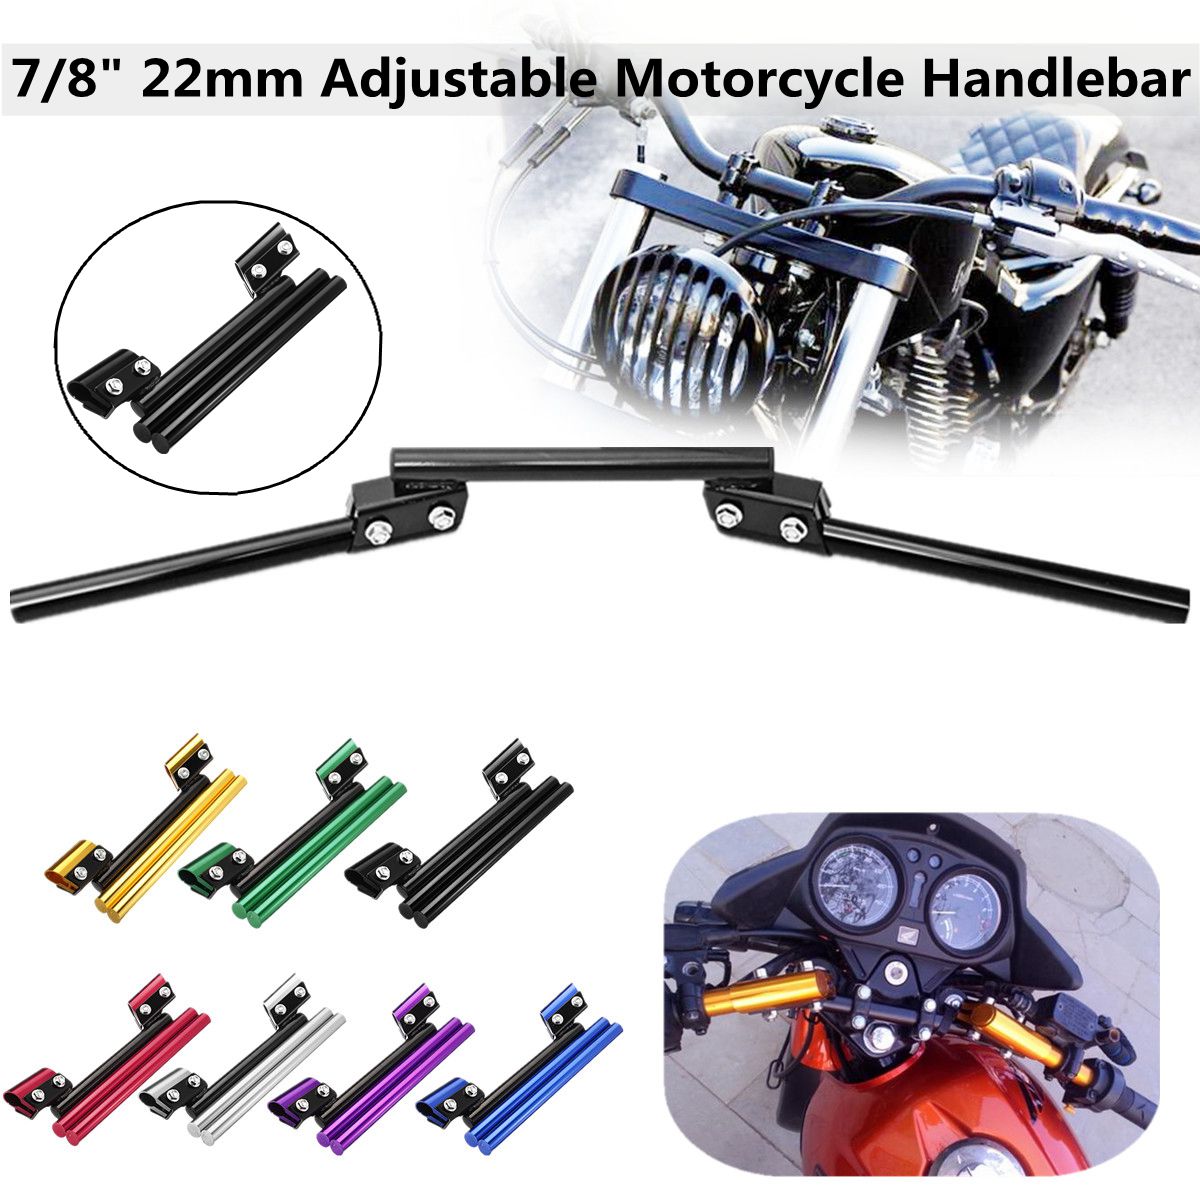 7/8 inch 22mm adjustable motorcycle handlebar